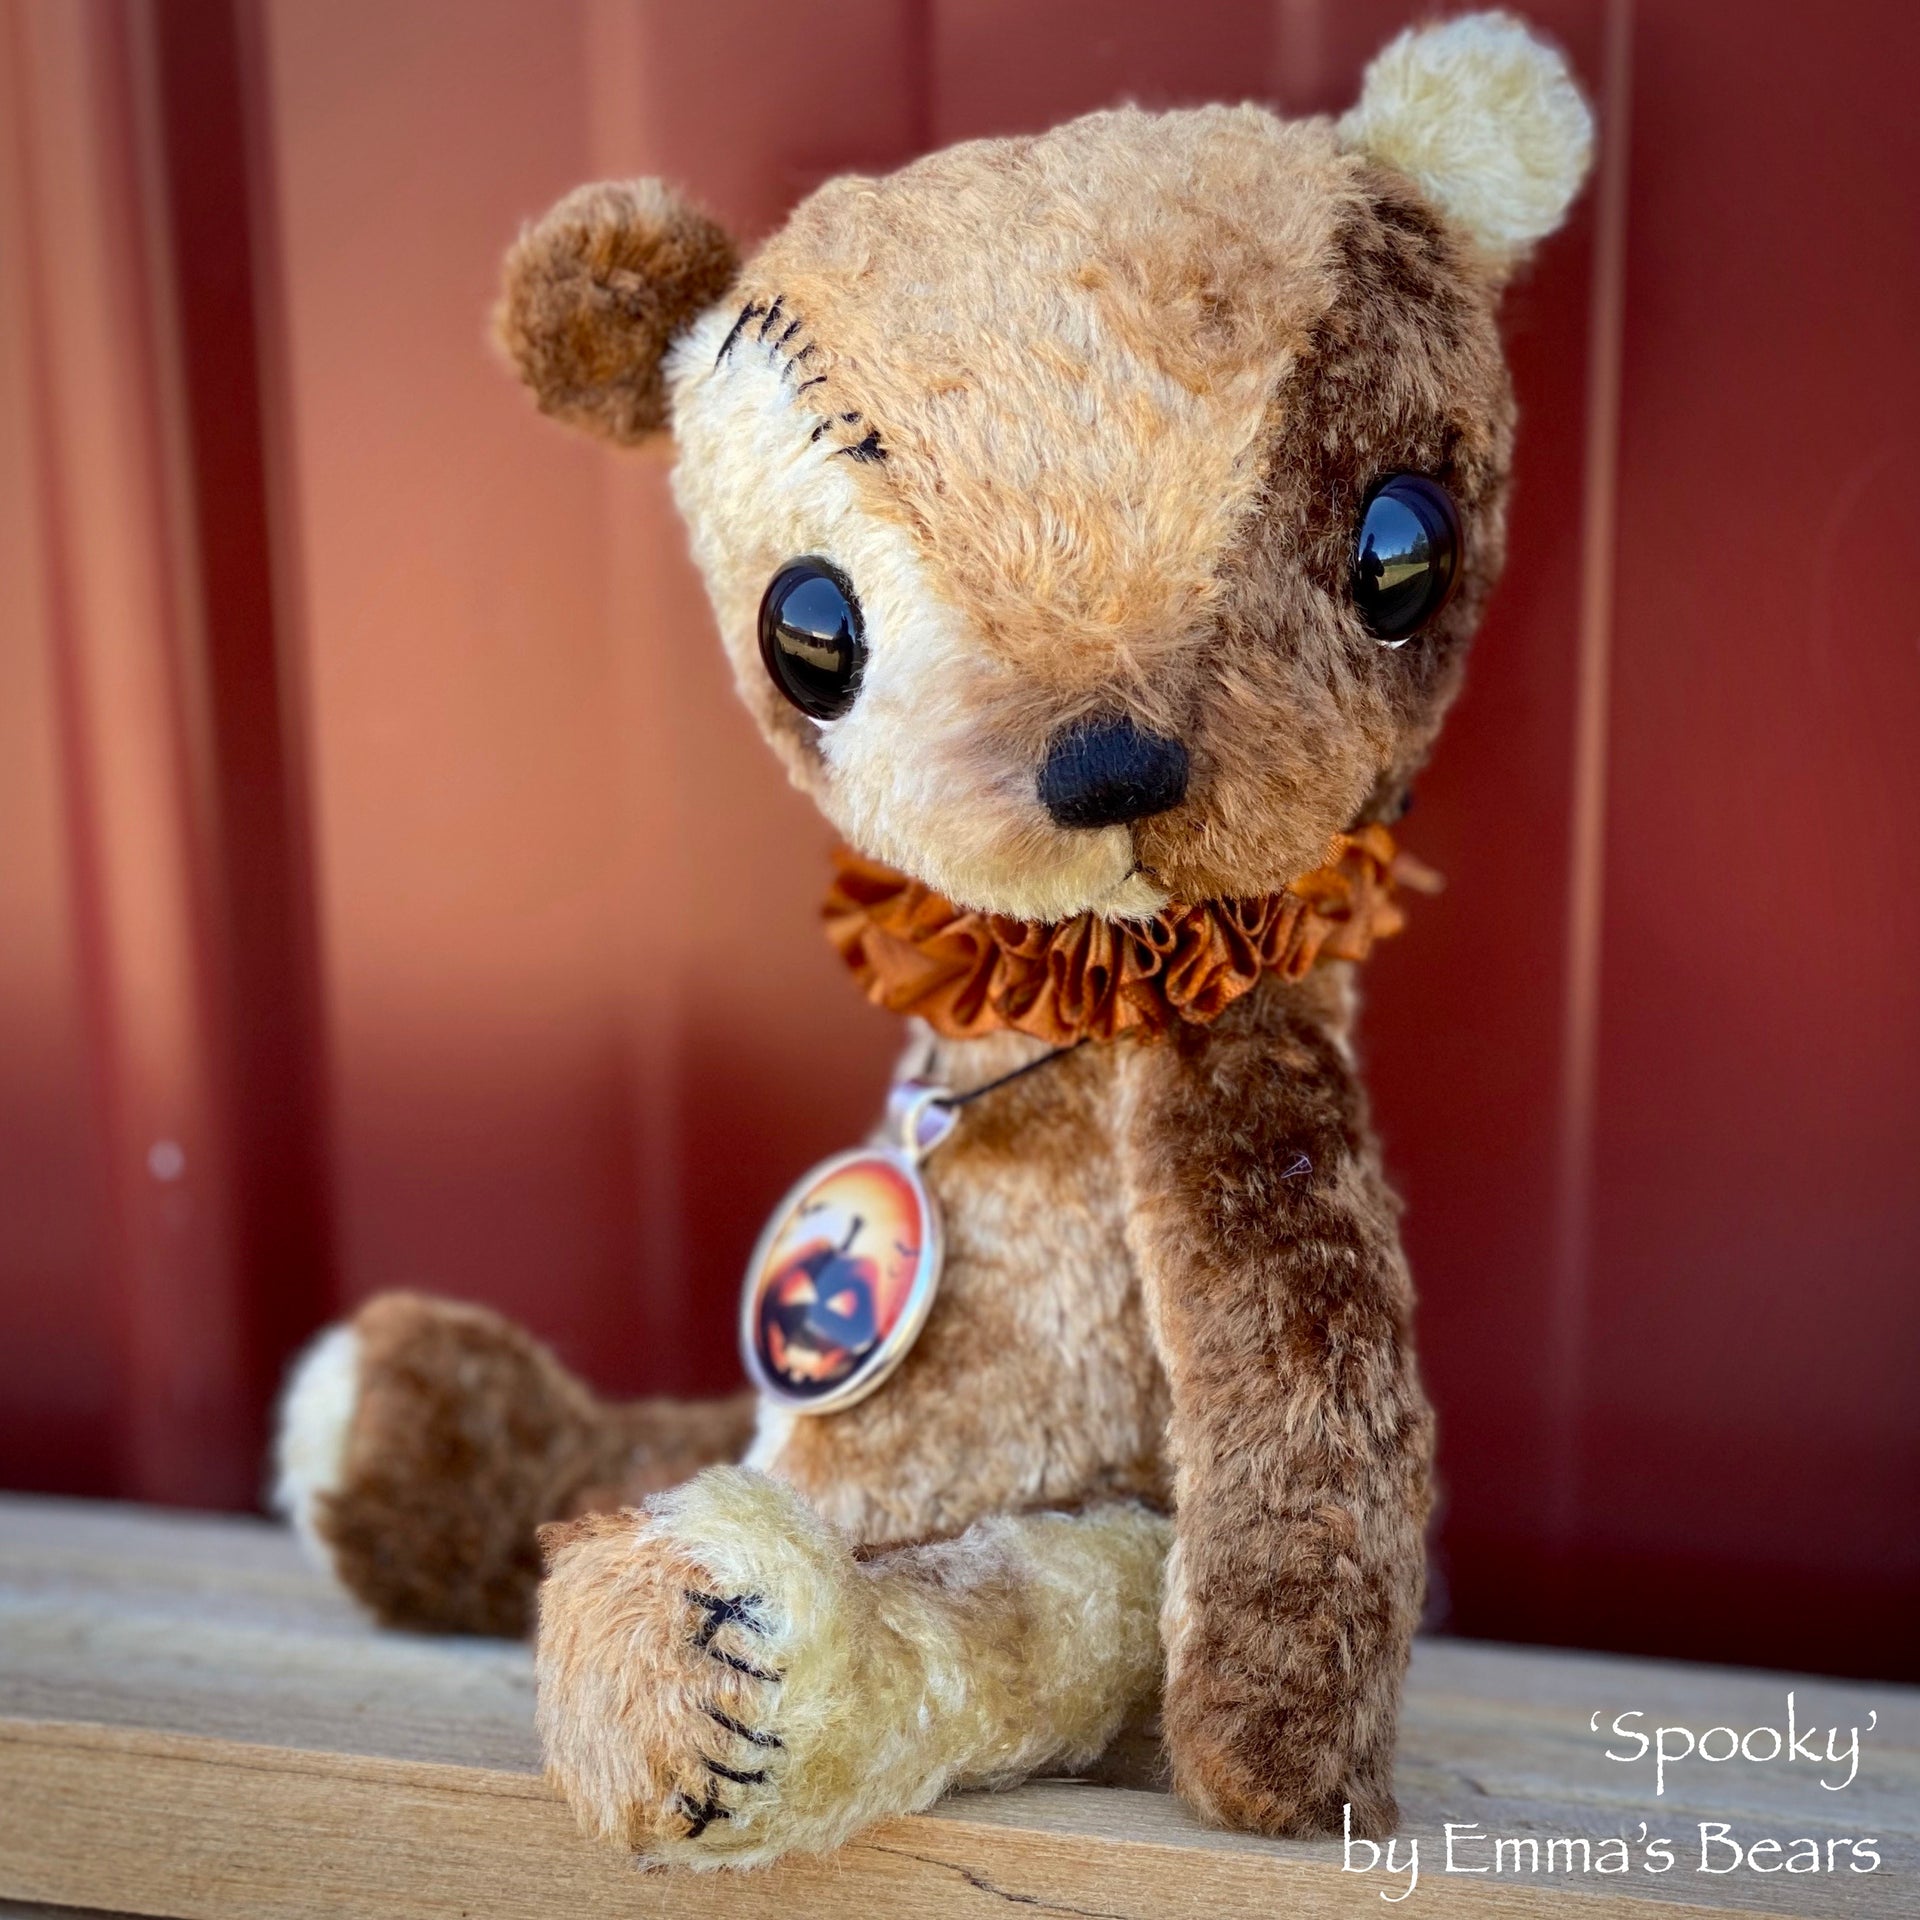 Spooky - 8" Viscose Artist Bear by Emma's Bears - OOAK